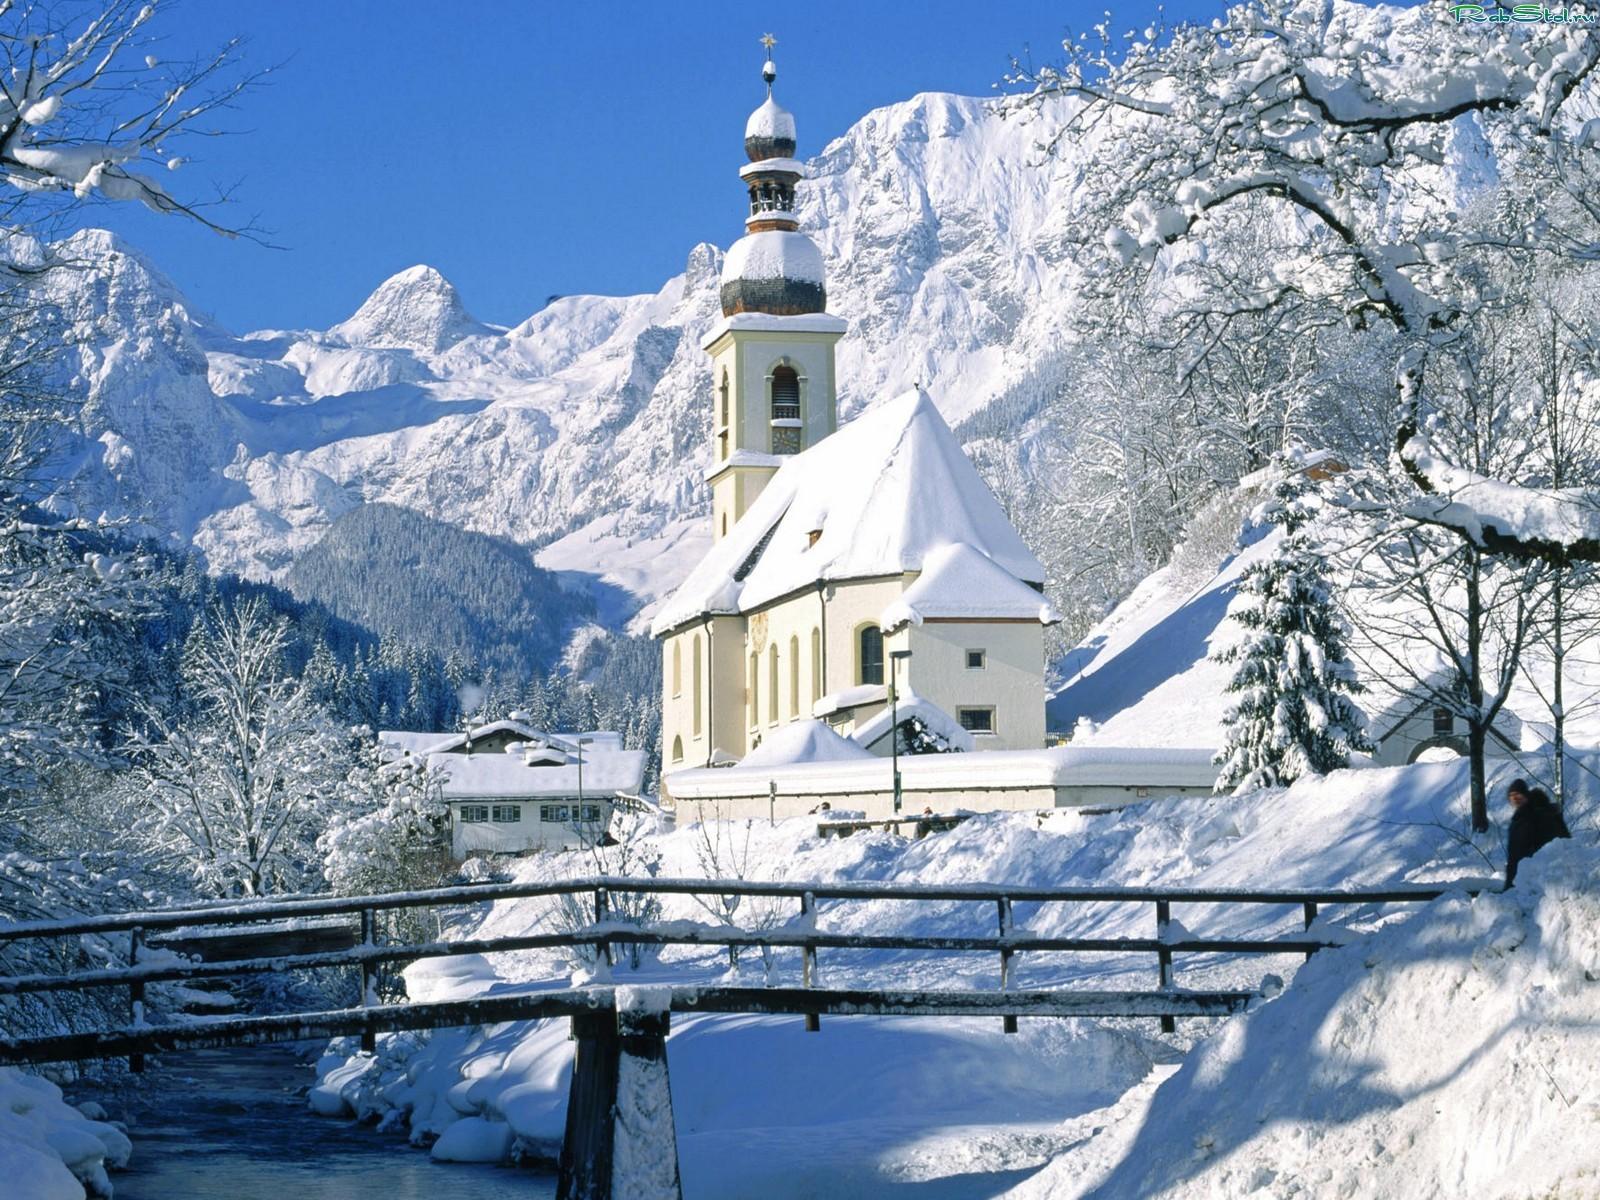 Файл:Церковь и колокольня в деревне Турчасово зимой.JPG — Википедия